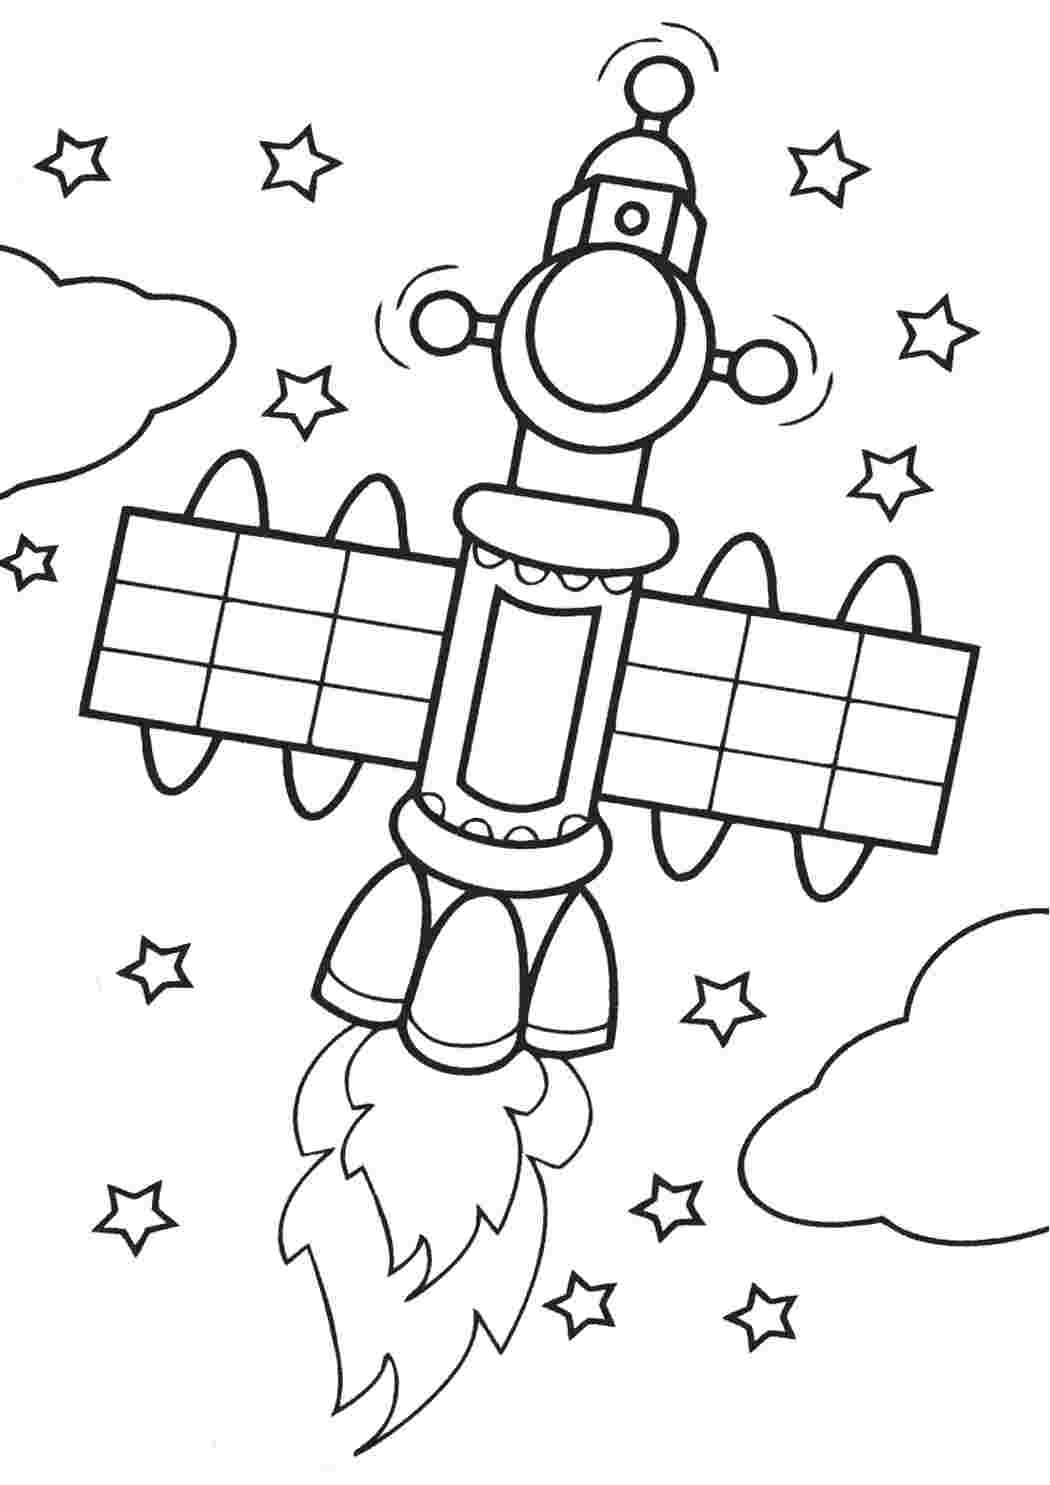 Тема космос для детей 7 лет. Раскраска. В космосе. Космос раскраска для детей. Раскраска для малышей. Космос. Раскраска на тему космос для детей.